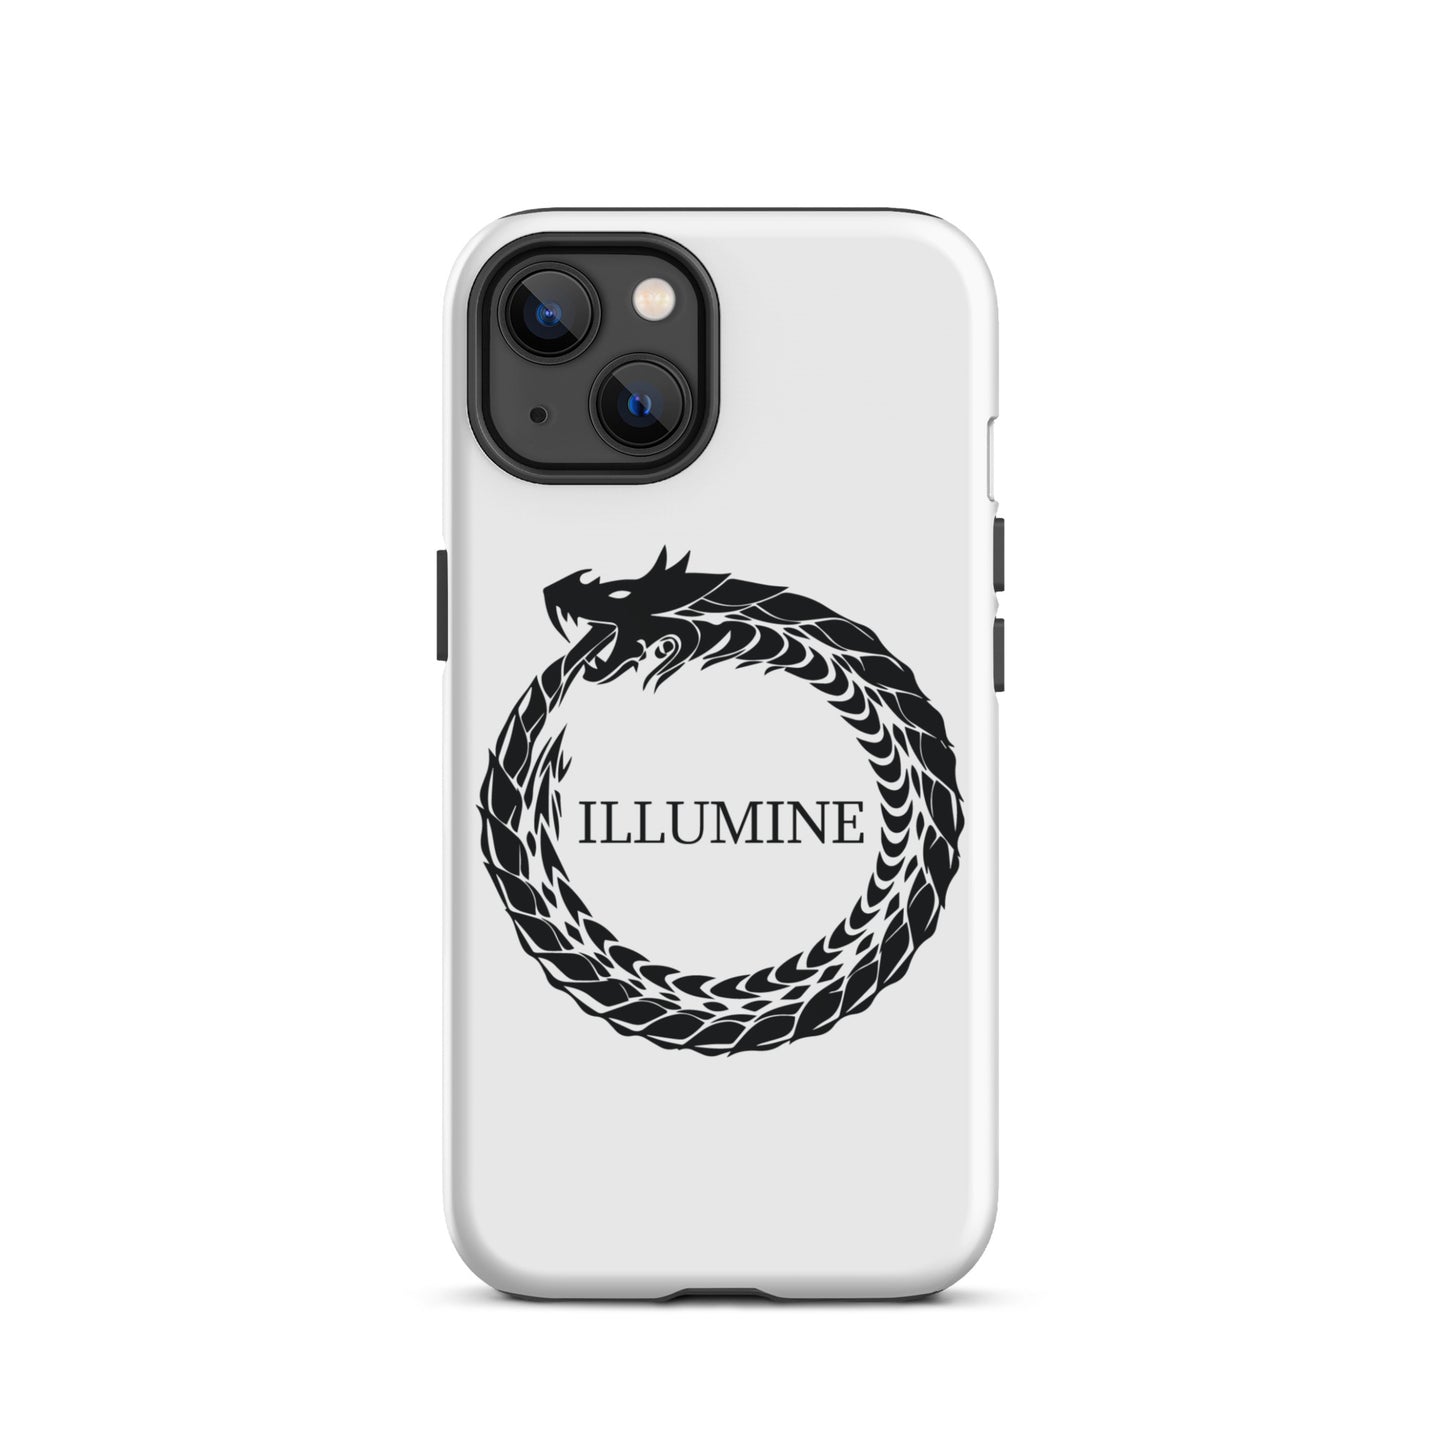 Illumine Tough iPhone case